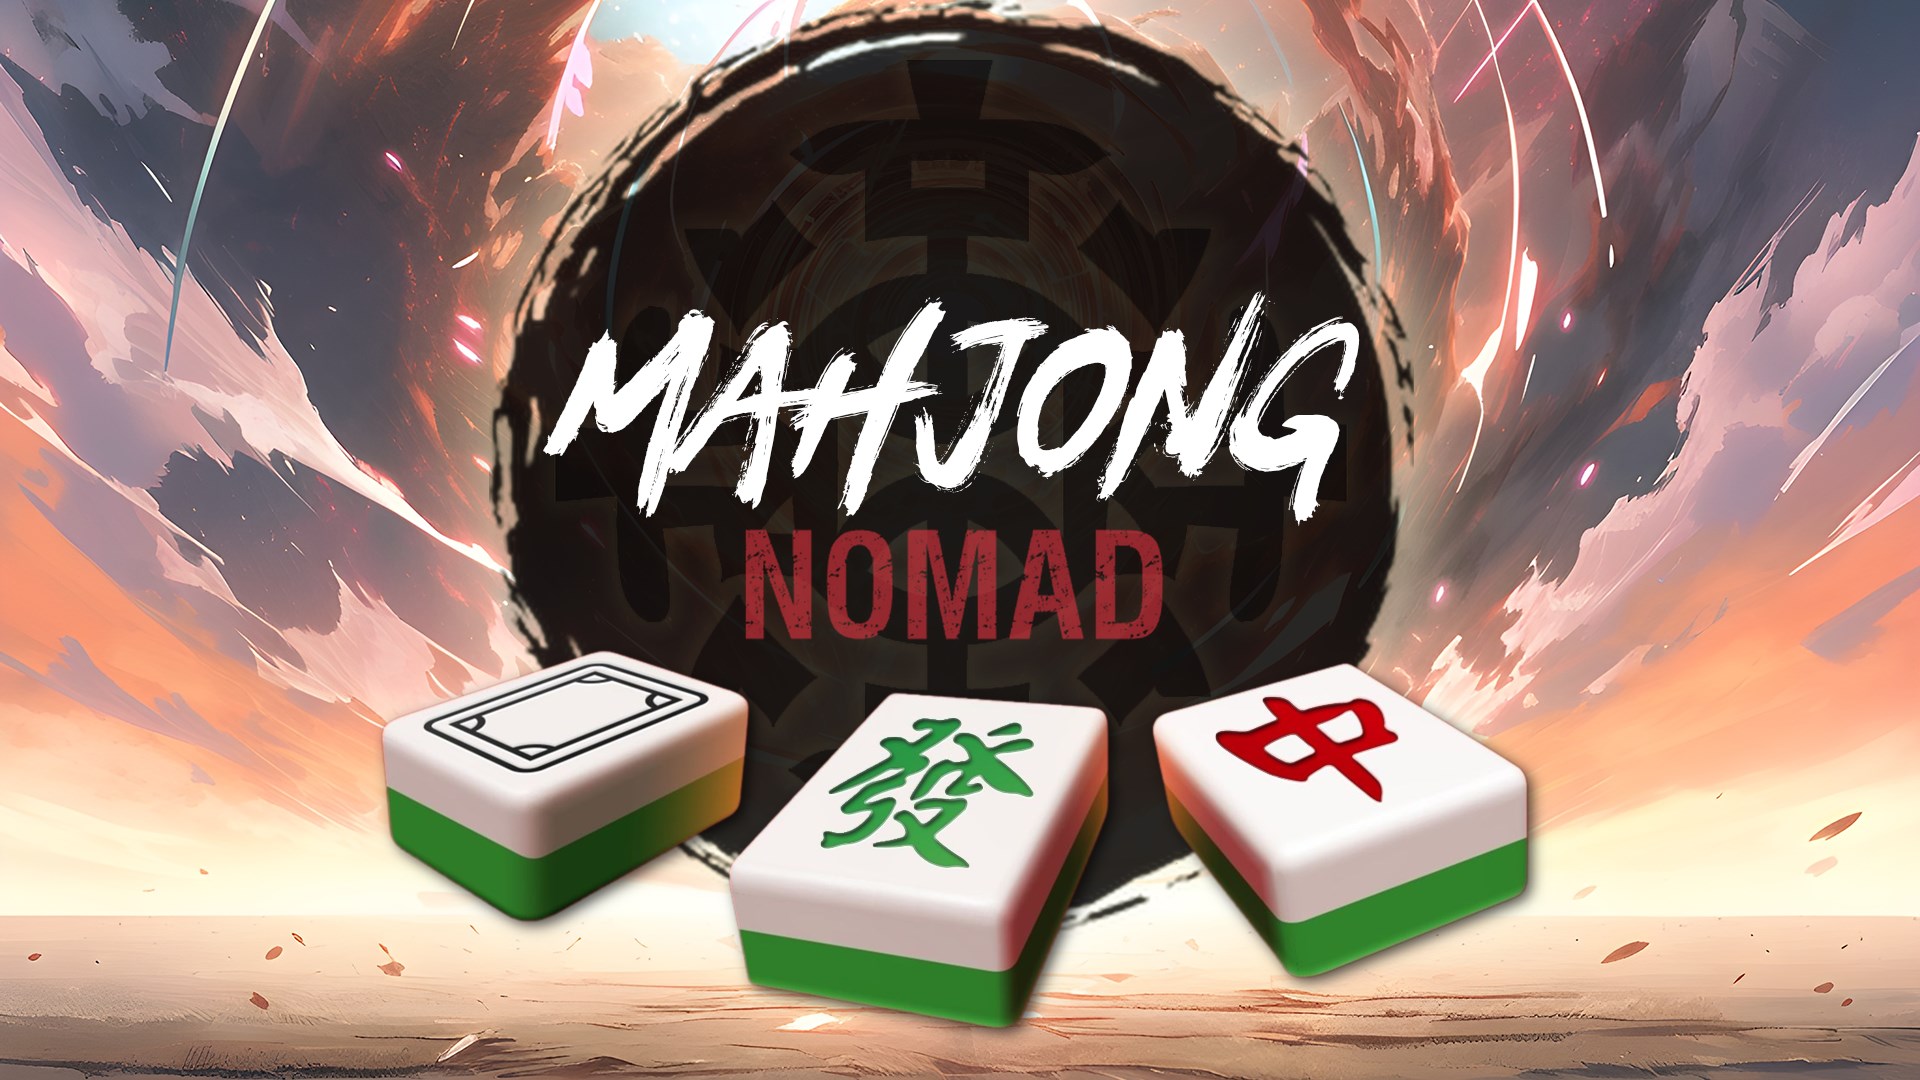 Obtener Mahjong Gratis !: Microsoft Store es-CL